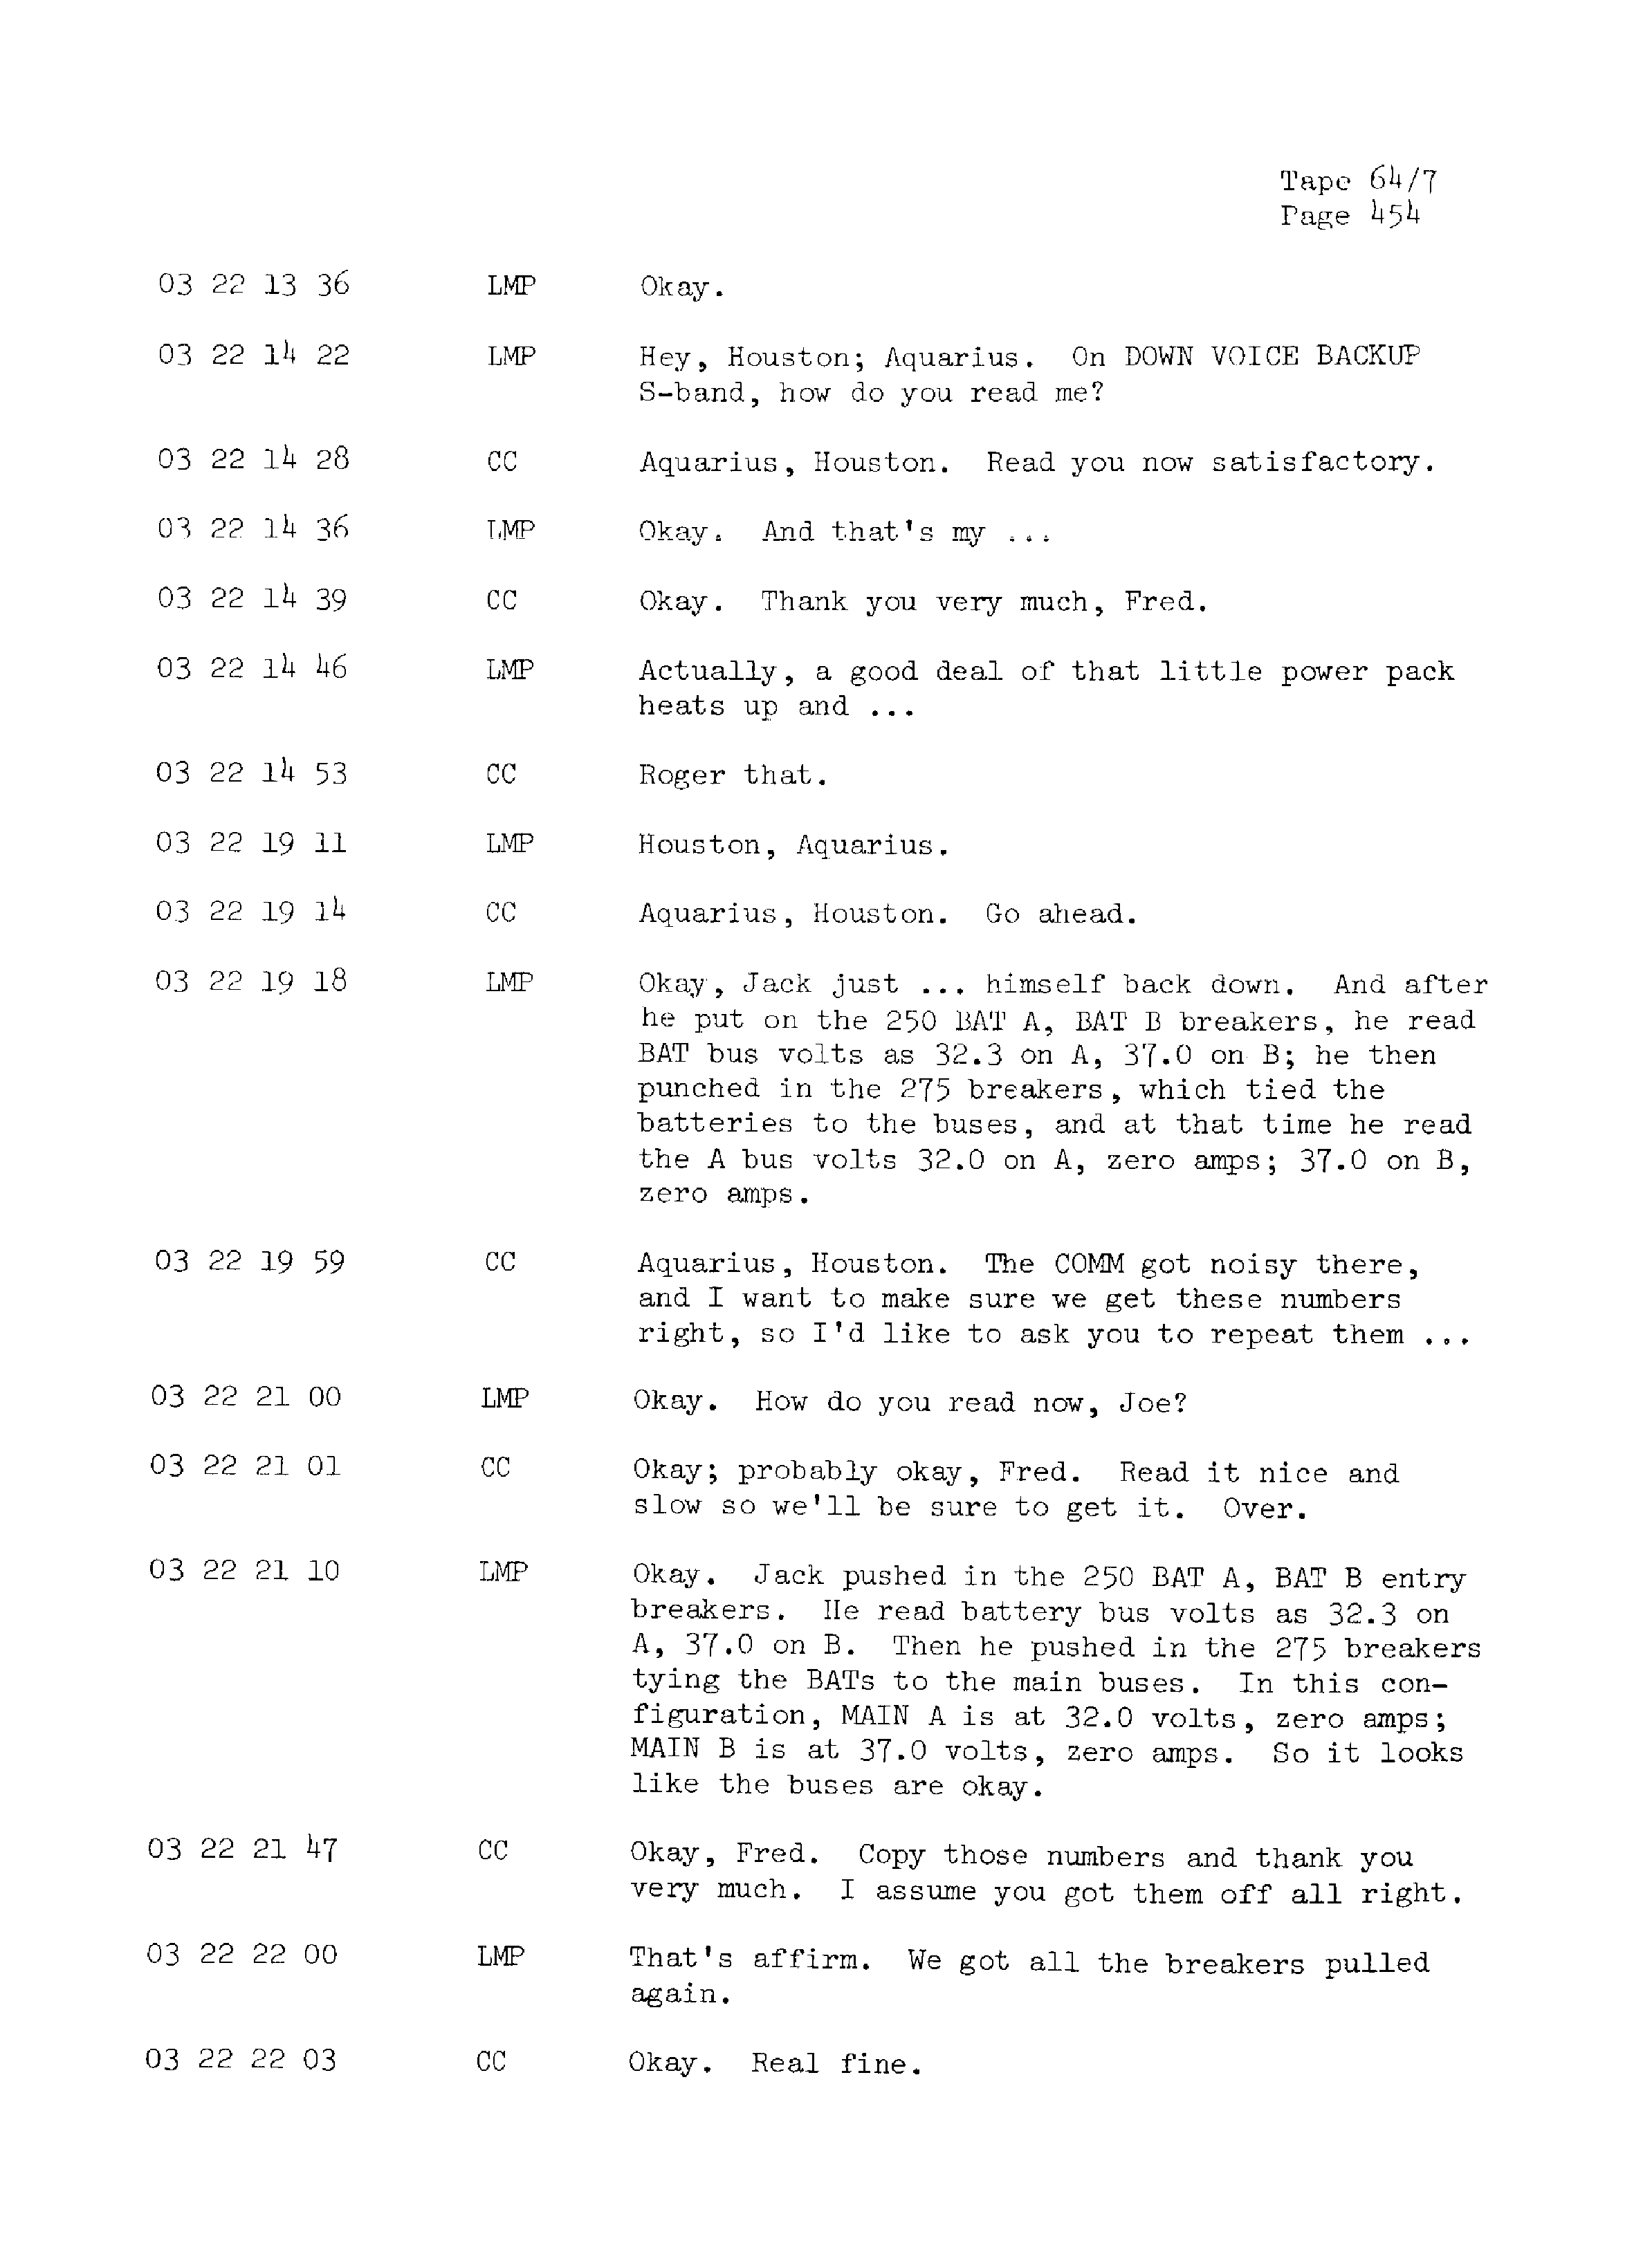 Page 461 of Apollo 13’s original transcript